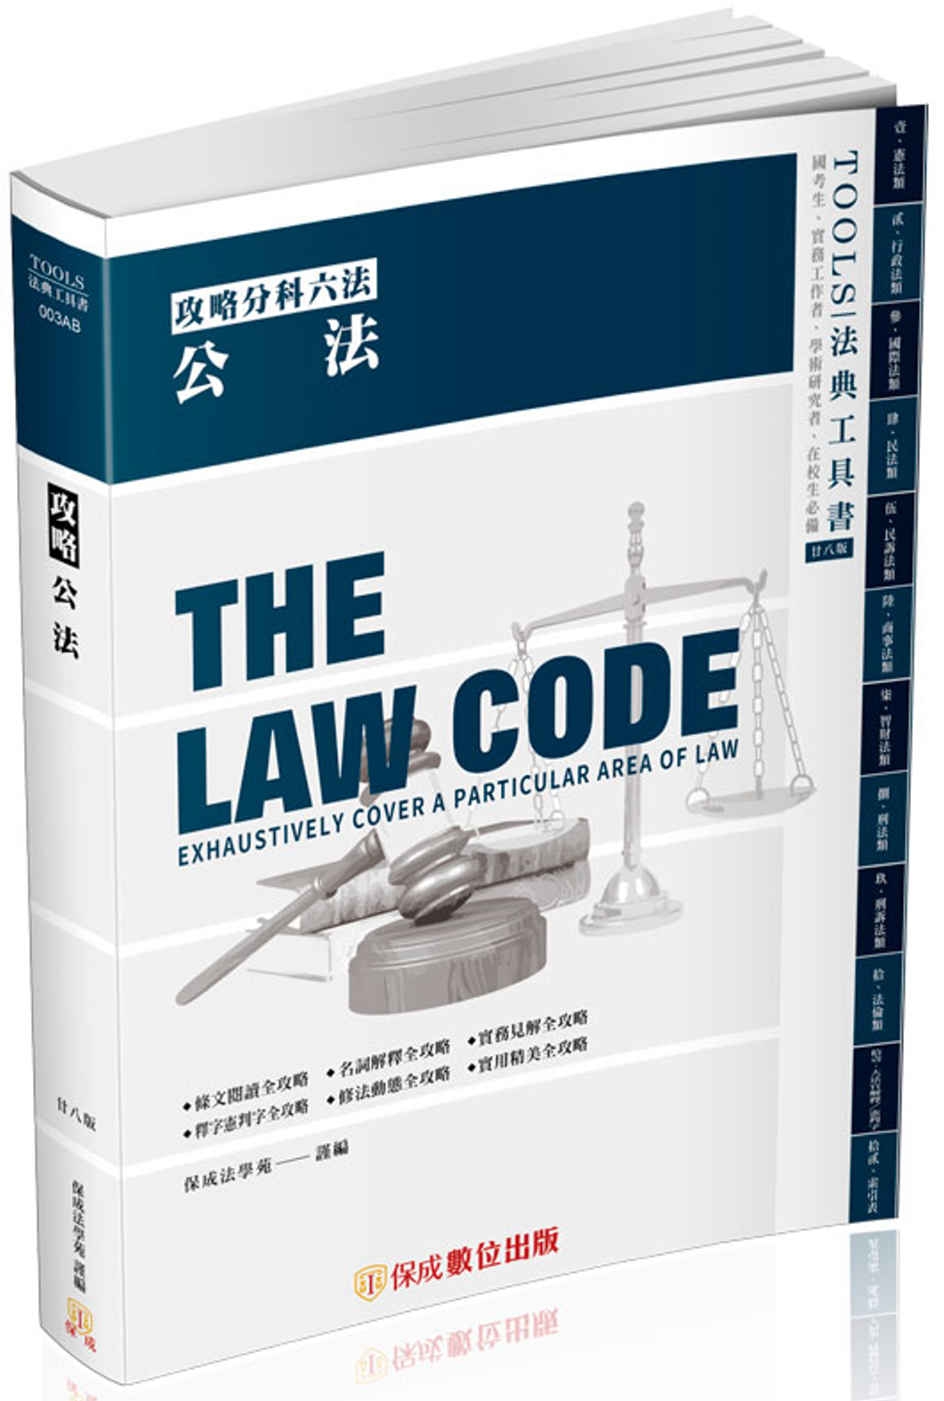 攻略公法-28版-2024法律法典工具書(保成)